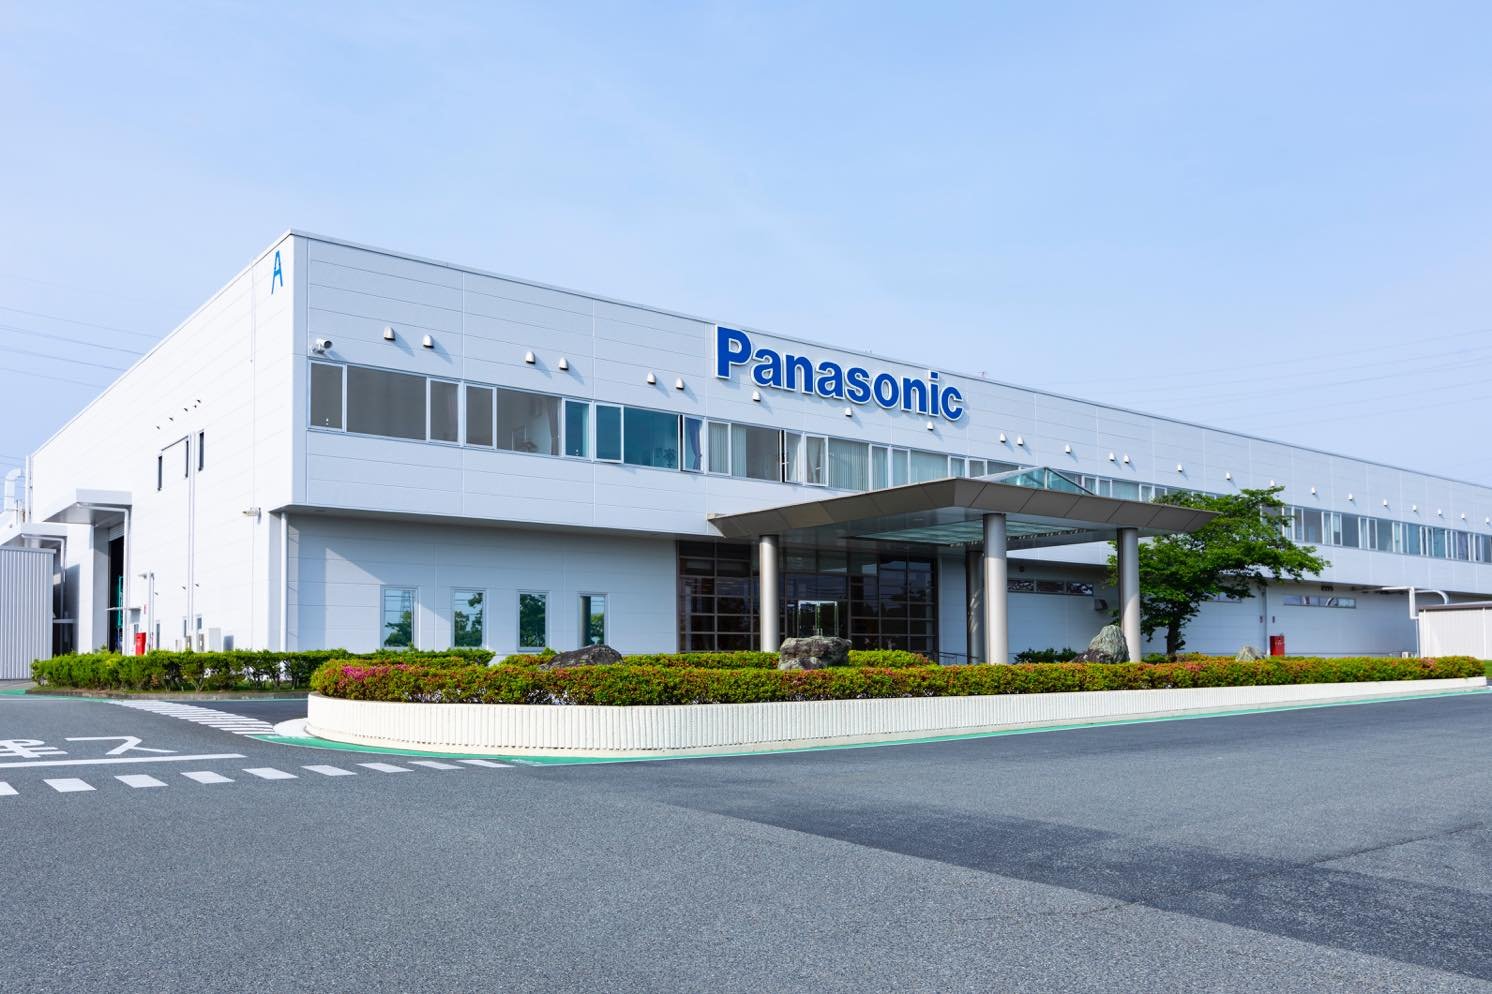 兵庫県加東市にあるパナソニックが運営するリサイクル工場「PETEC」 | Make New Magazine「未来の定番」をつくるために、パナソニックのリアルな姿を伝えるメディア